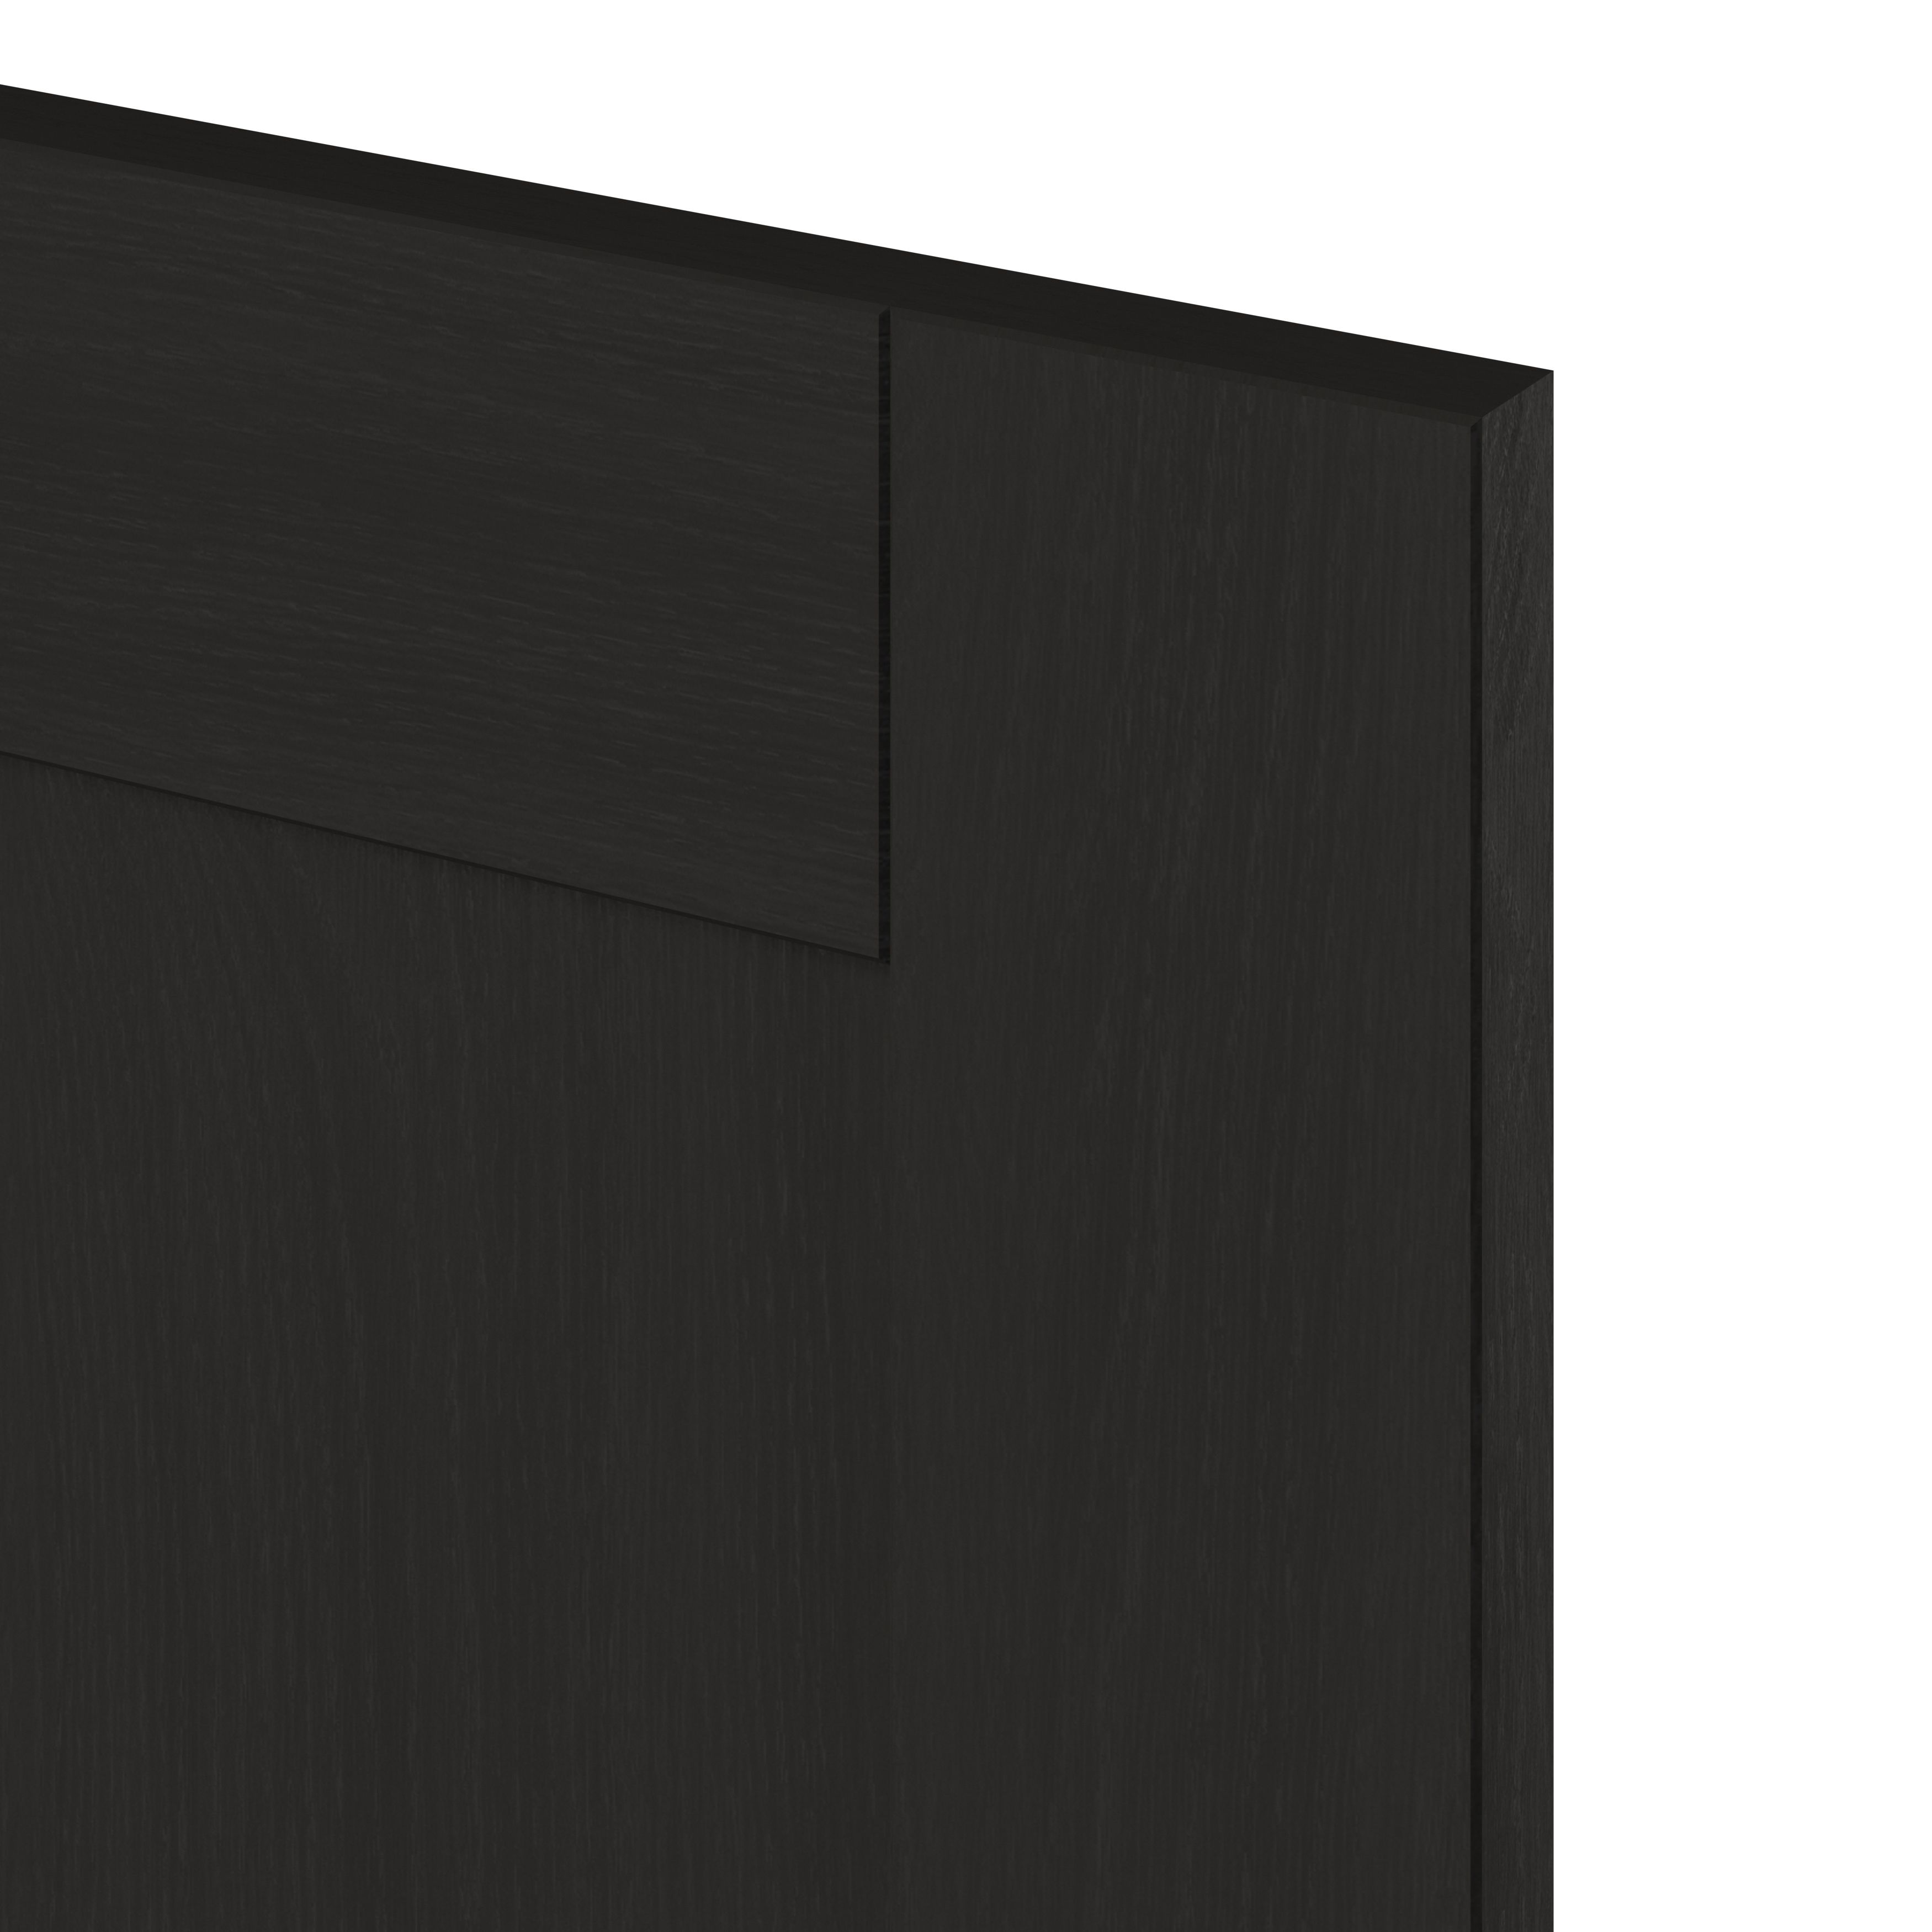 GoodHome Verbena Matt charcoal Drawer front, bridging door & bi fold door, (W)400mm (H)356mm (T)20mm